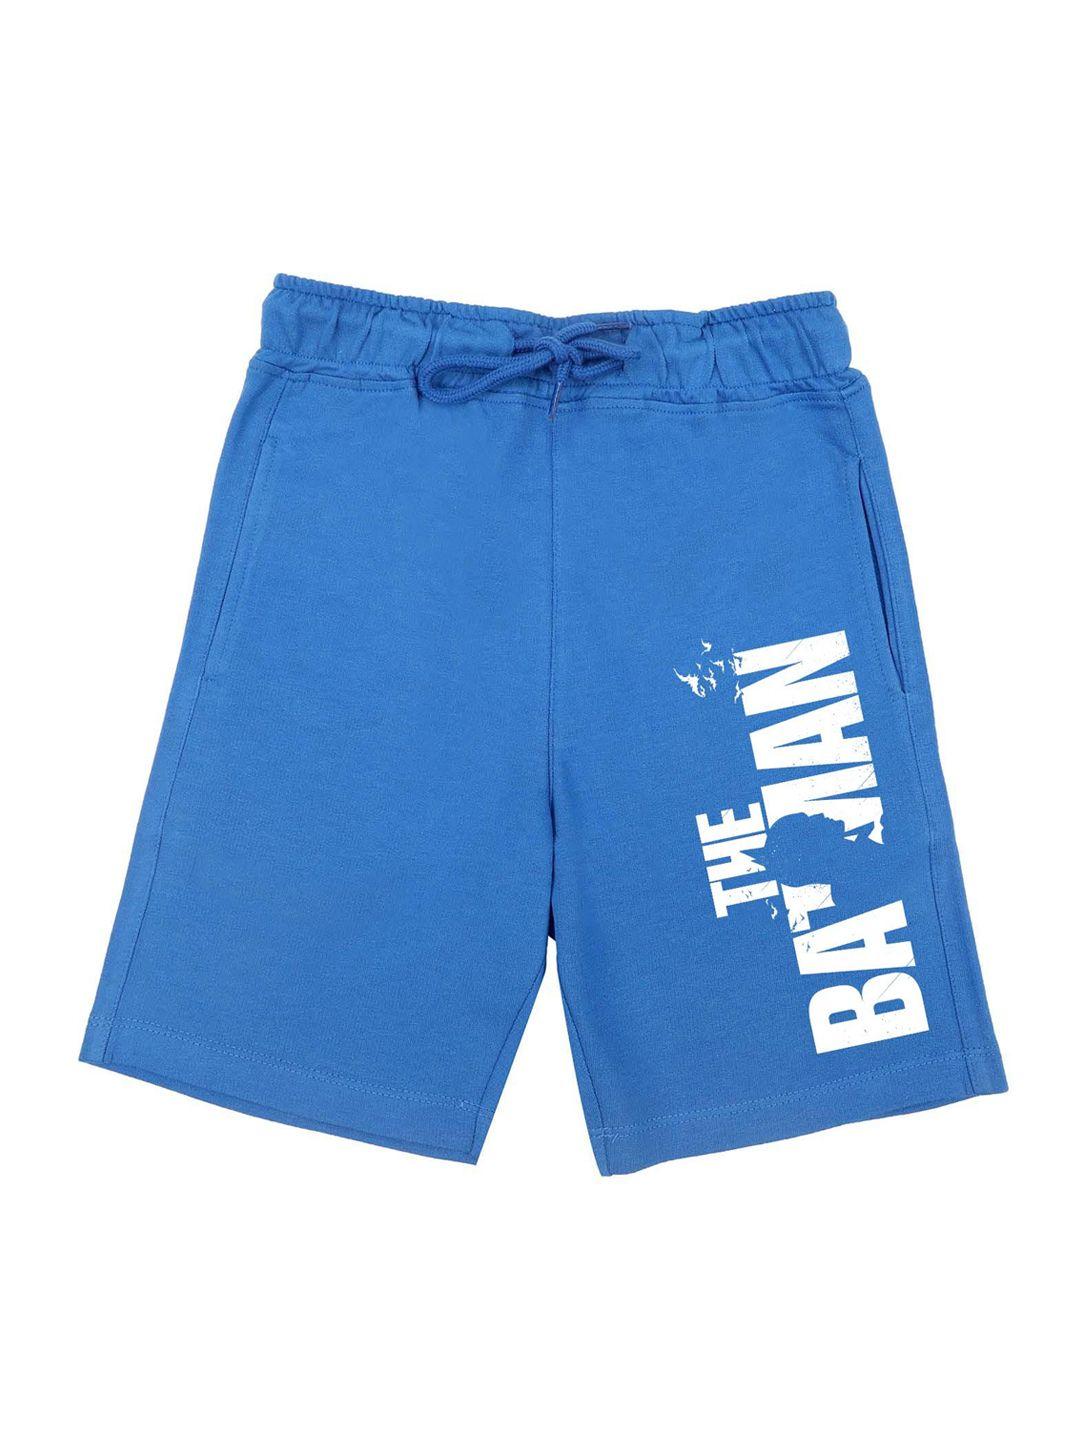 dc by wear your mind boys blue batman shorts